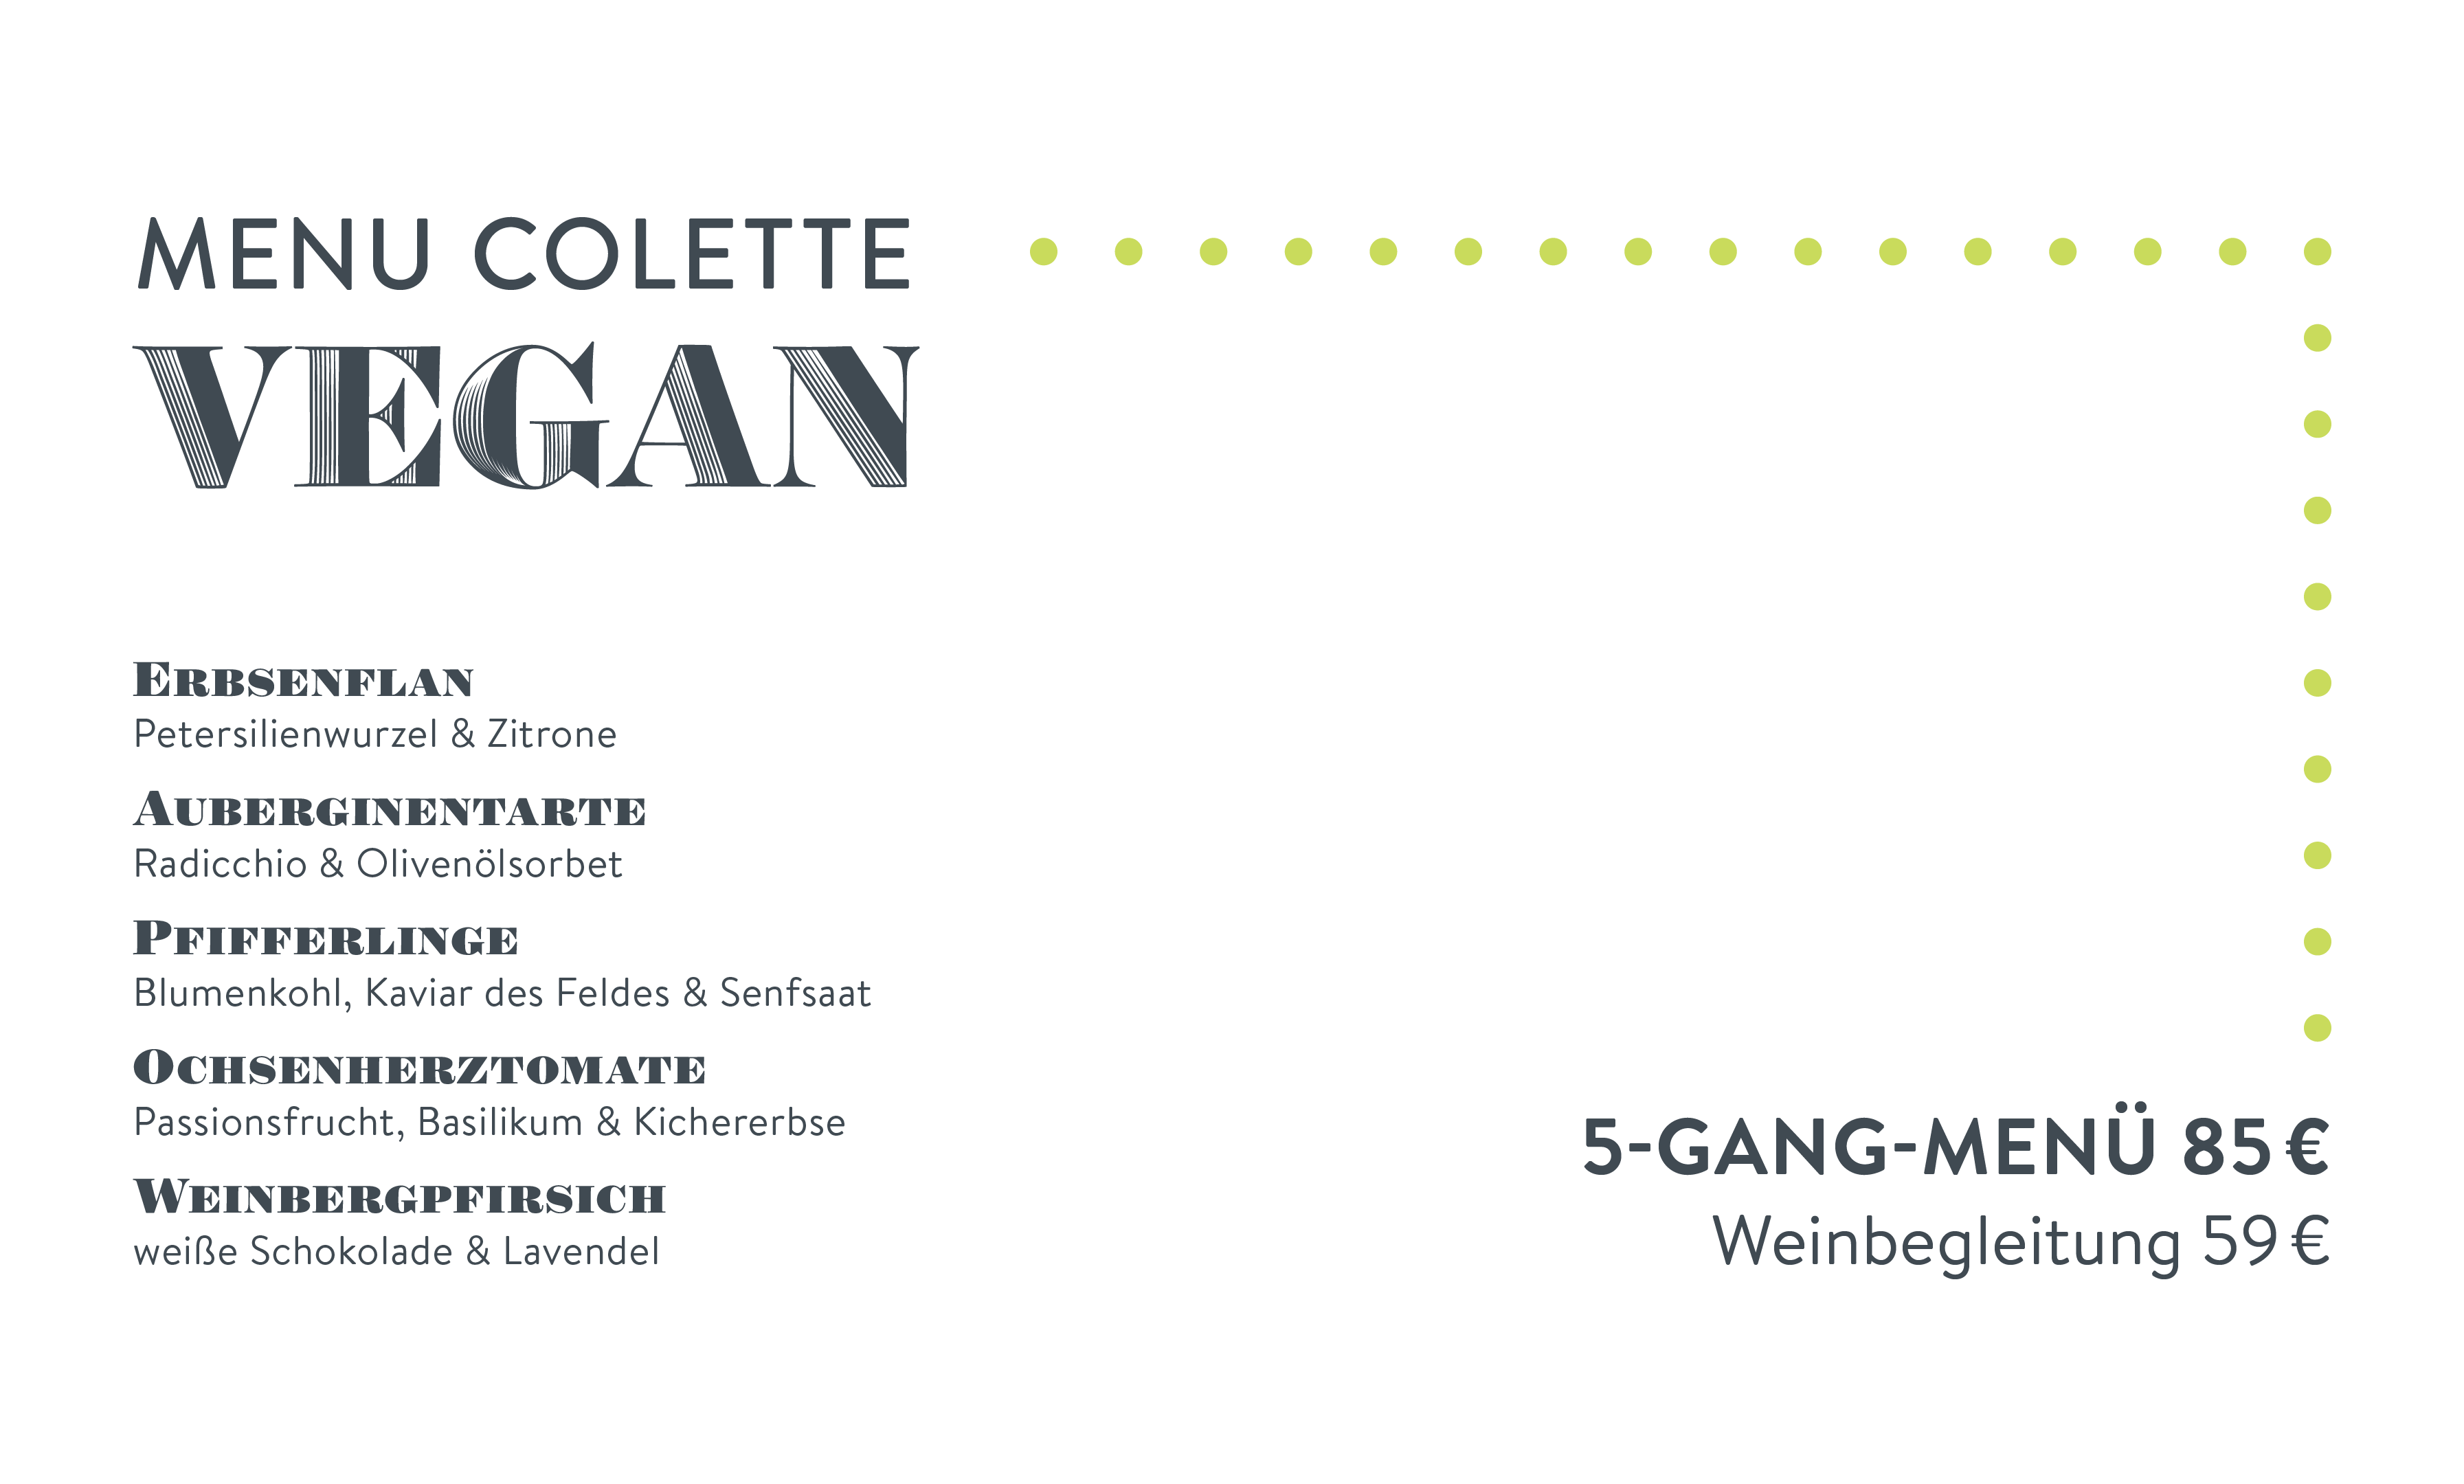 Speisekarte Menu Colette Vegan 5-Gang-Menü